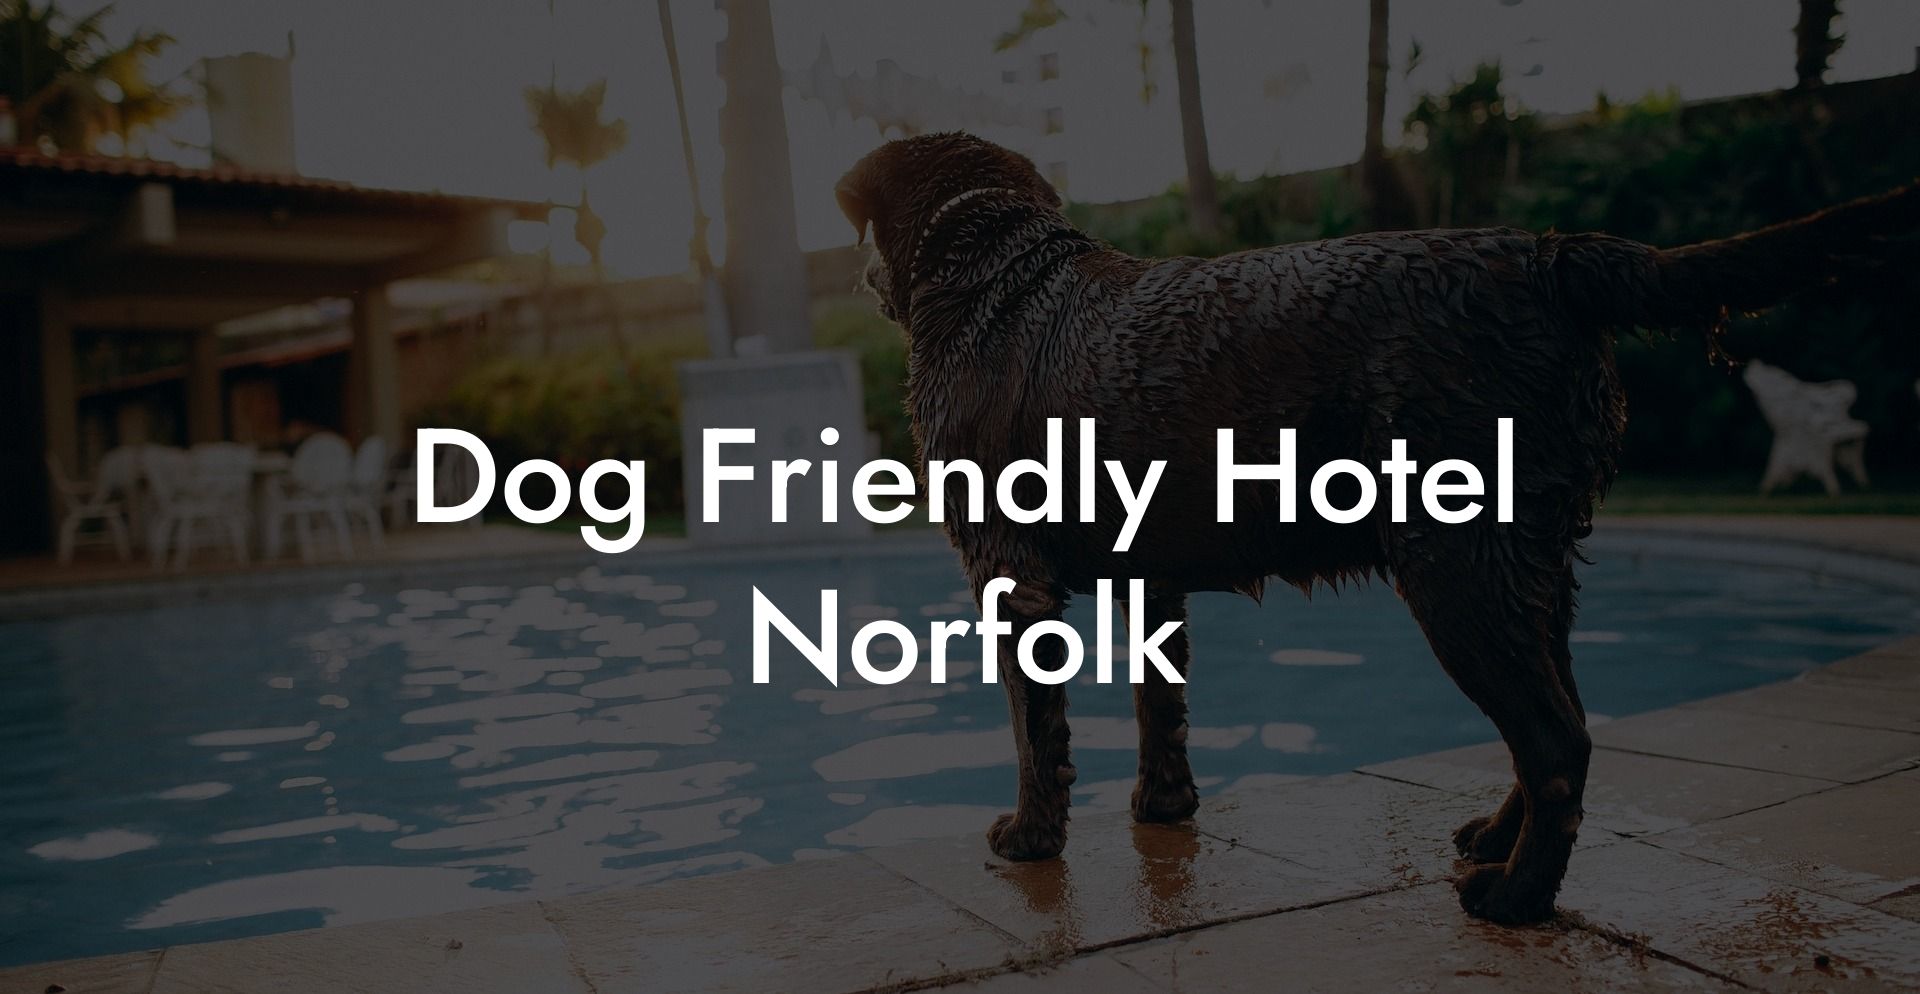 Dog Friendly Hotel Norfolk